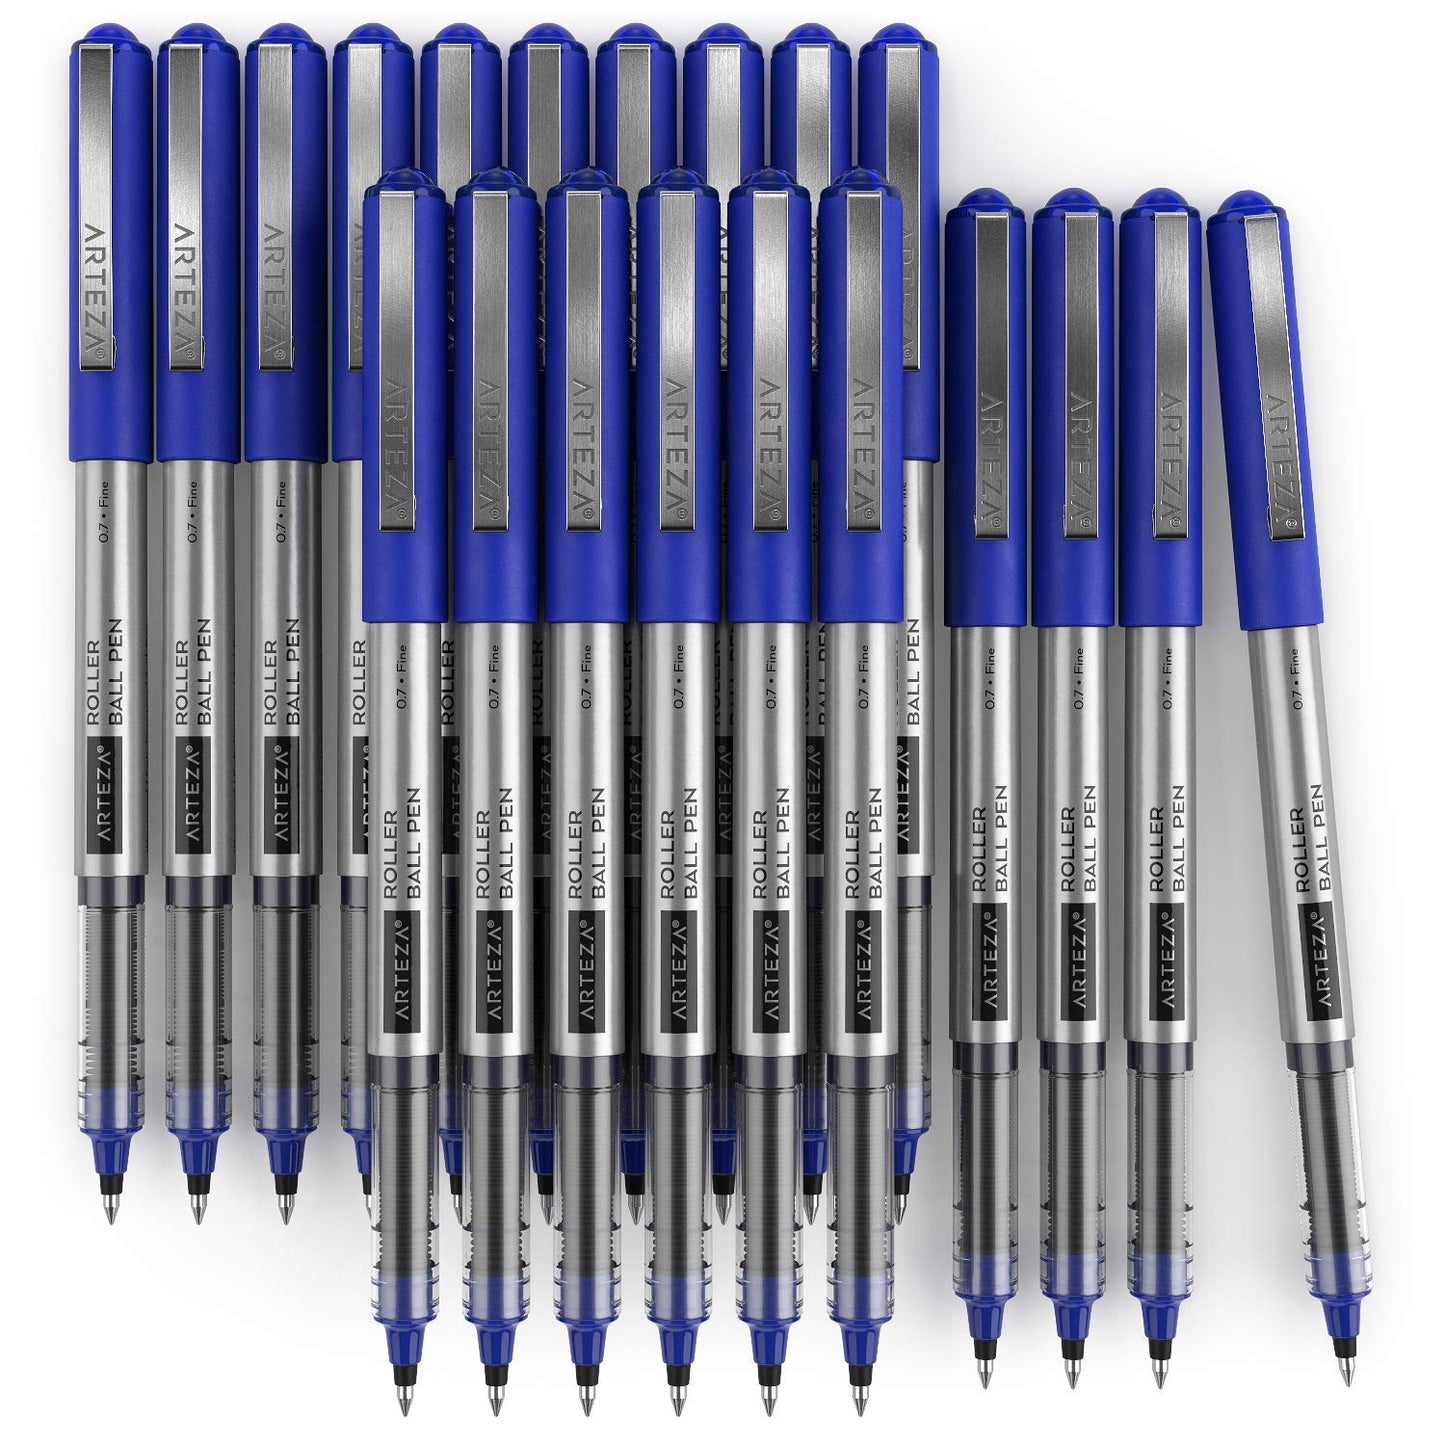 Arteza Roller Ball Pens, Blue, 0.7mm Nib - 20 Pack